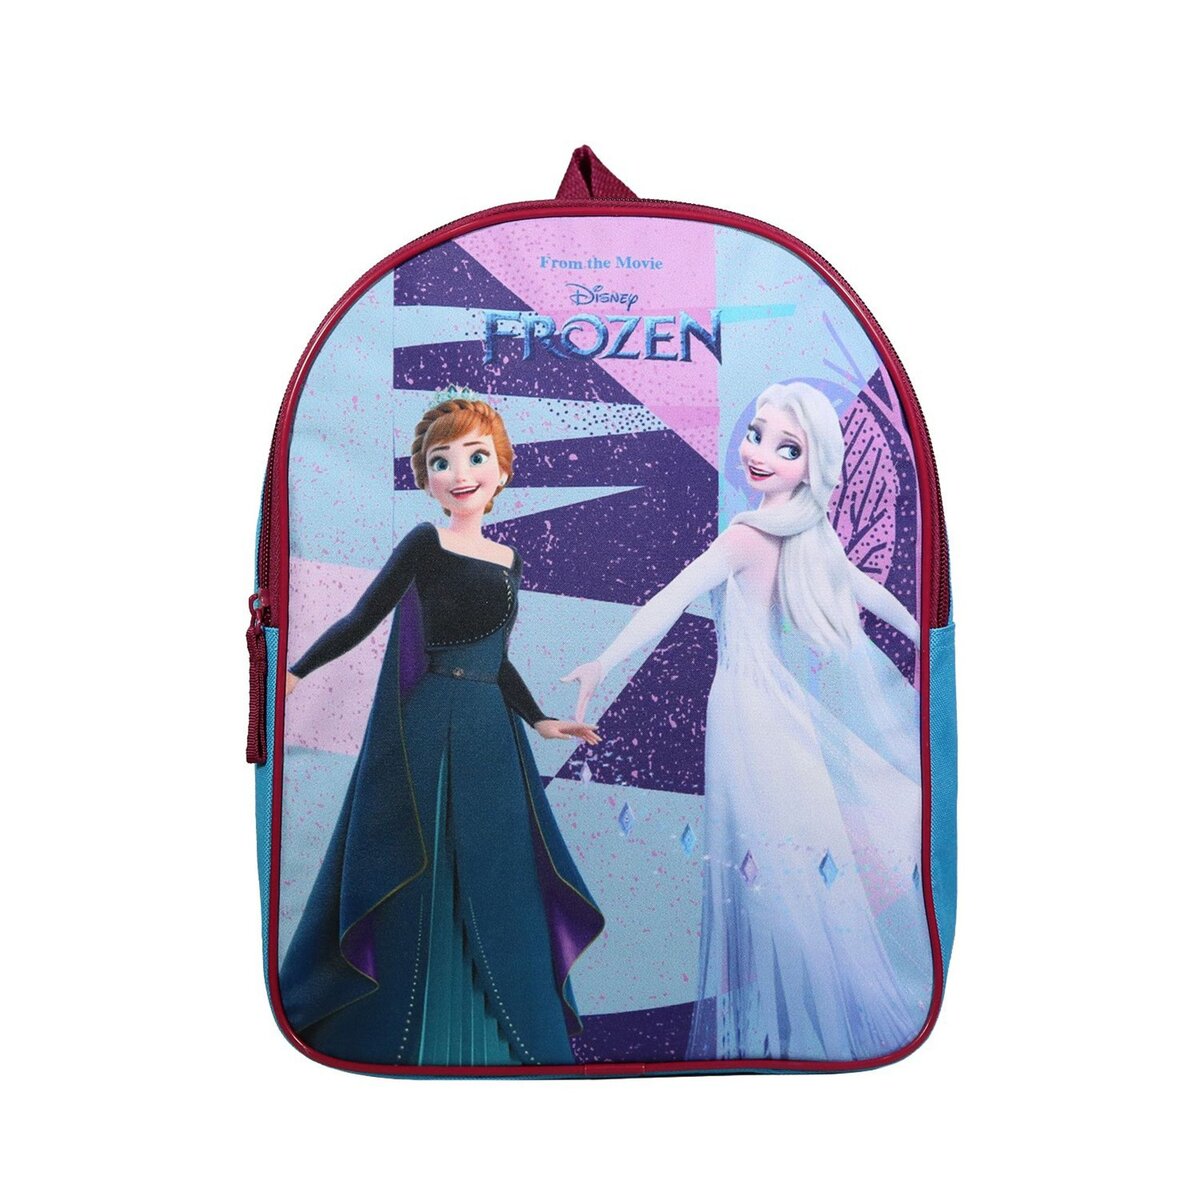 Bagtrotter BAGTROTTER Sac à dos gouter maternelle 31 cm Disney La Reine Des Neiges / Frozen Multicolore